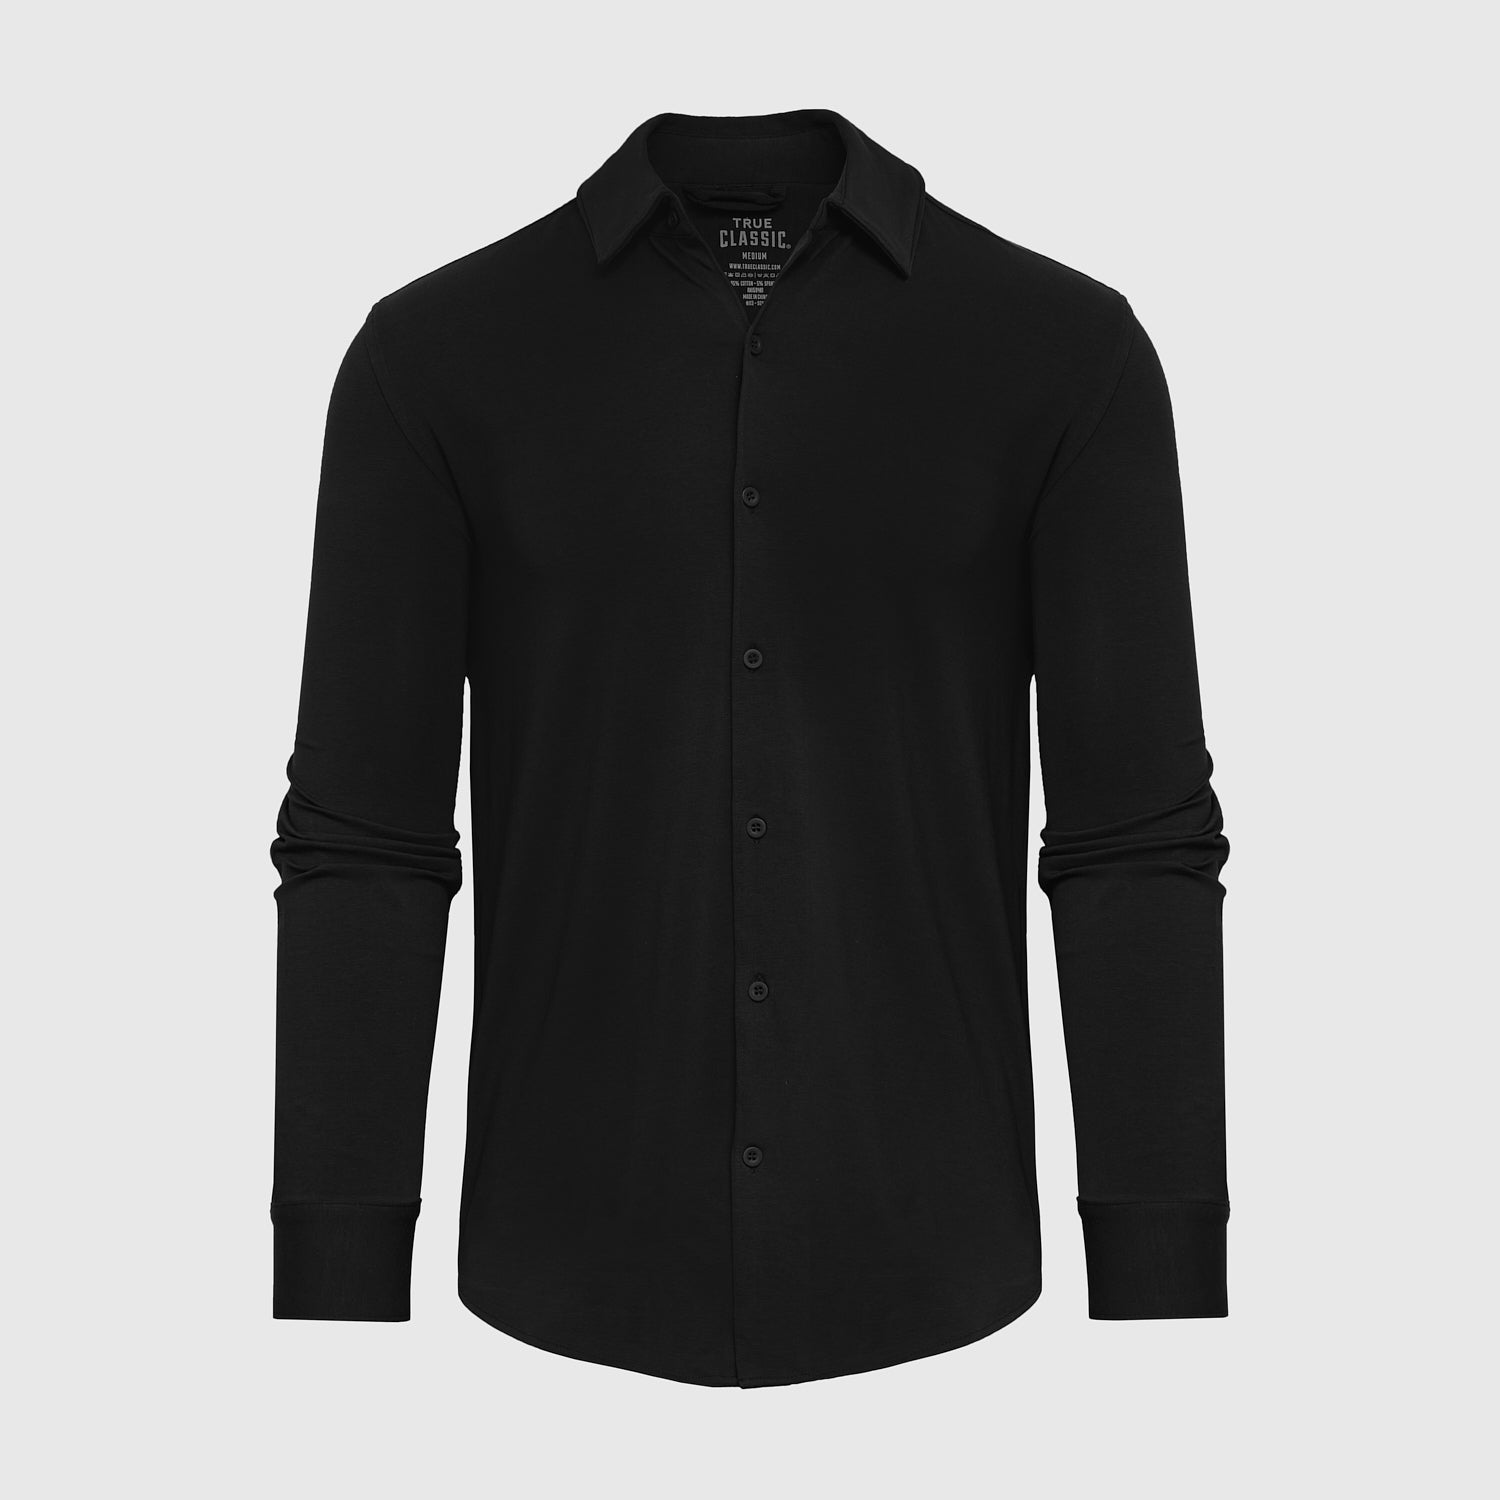 Black Long Sleeve Button Up Shirt, Black Long Sleeve Button Up Shirt